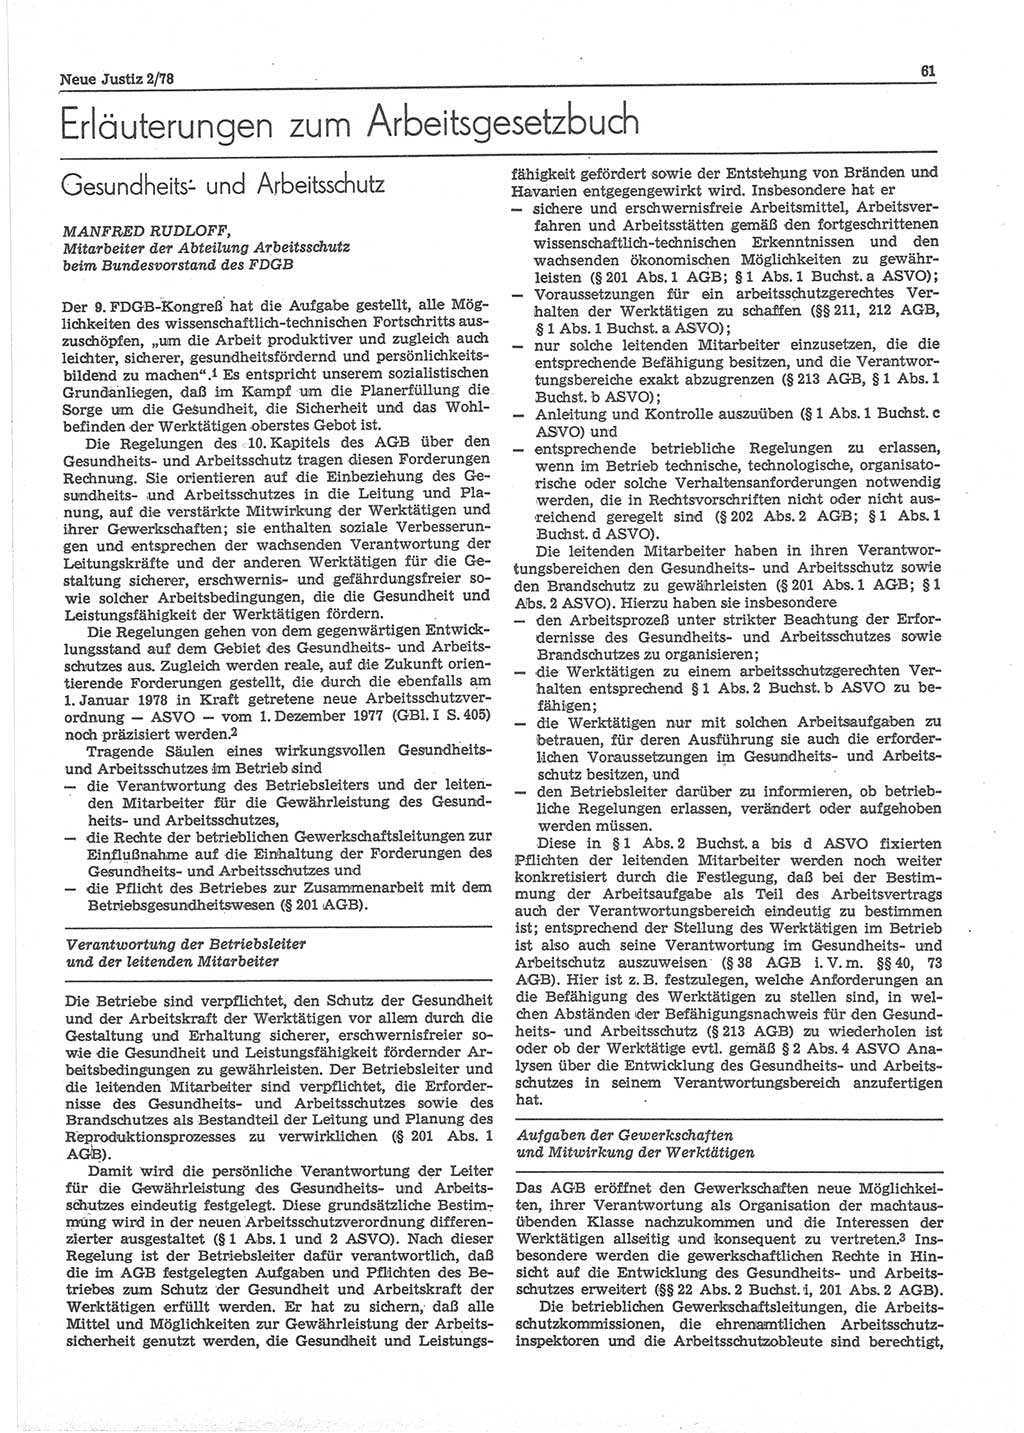 Neue Justiz (NJ), Zeitschrift für sozialistisches Recht und Gesetzlichkeit [Deutsche Demokratische Republik (DDR)], 32. Jahrgang 1978, Seite 61 (NJ DDR 1978, S. 61)